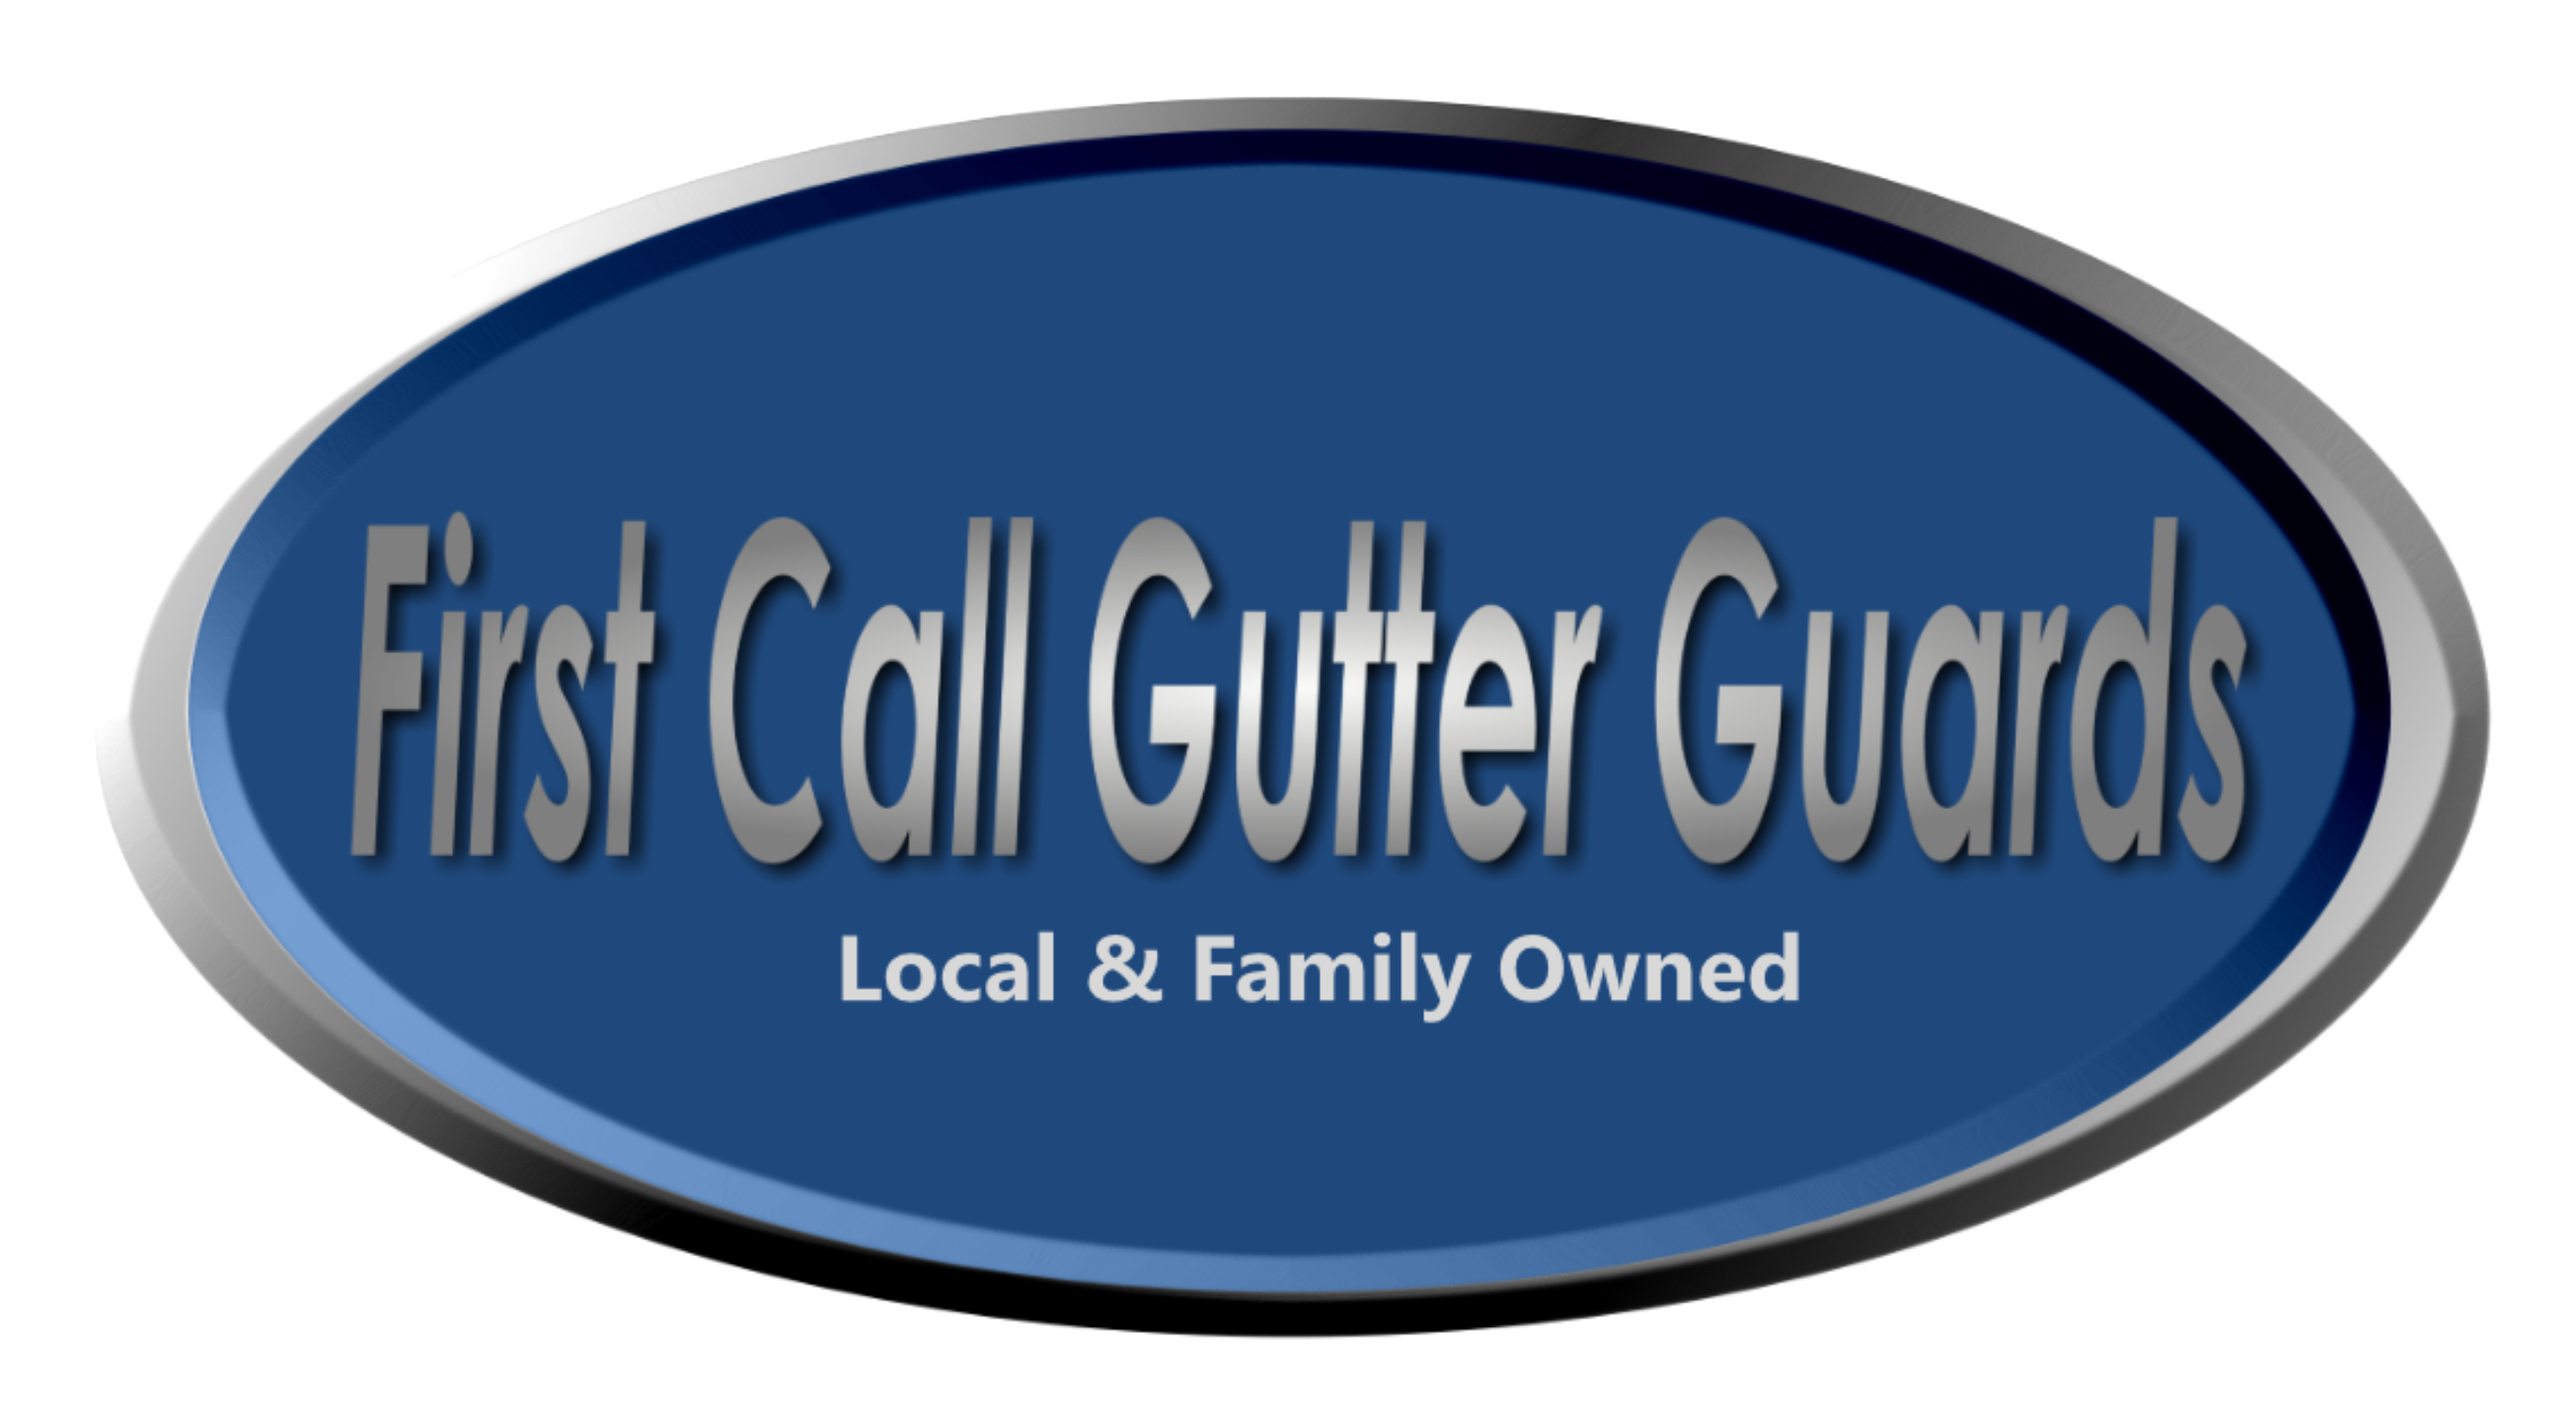 First Call Gutter Guards